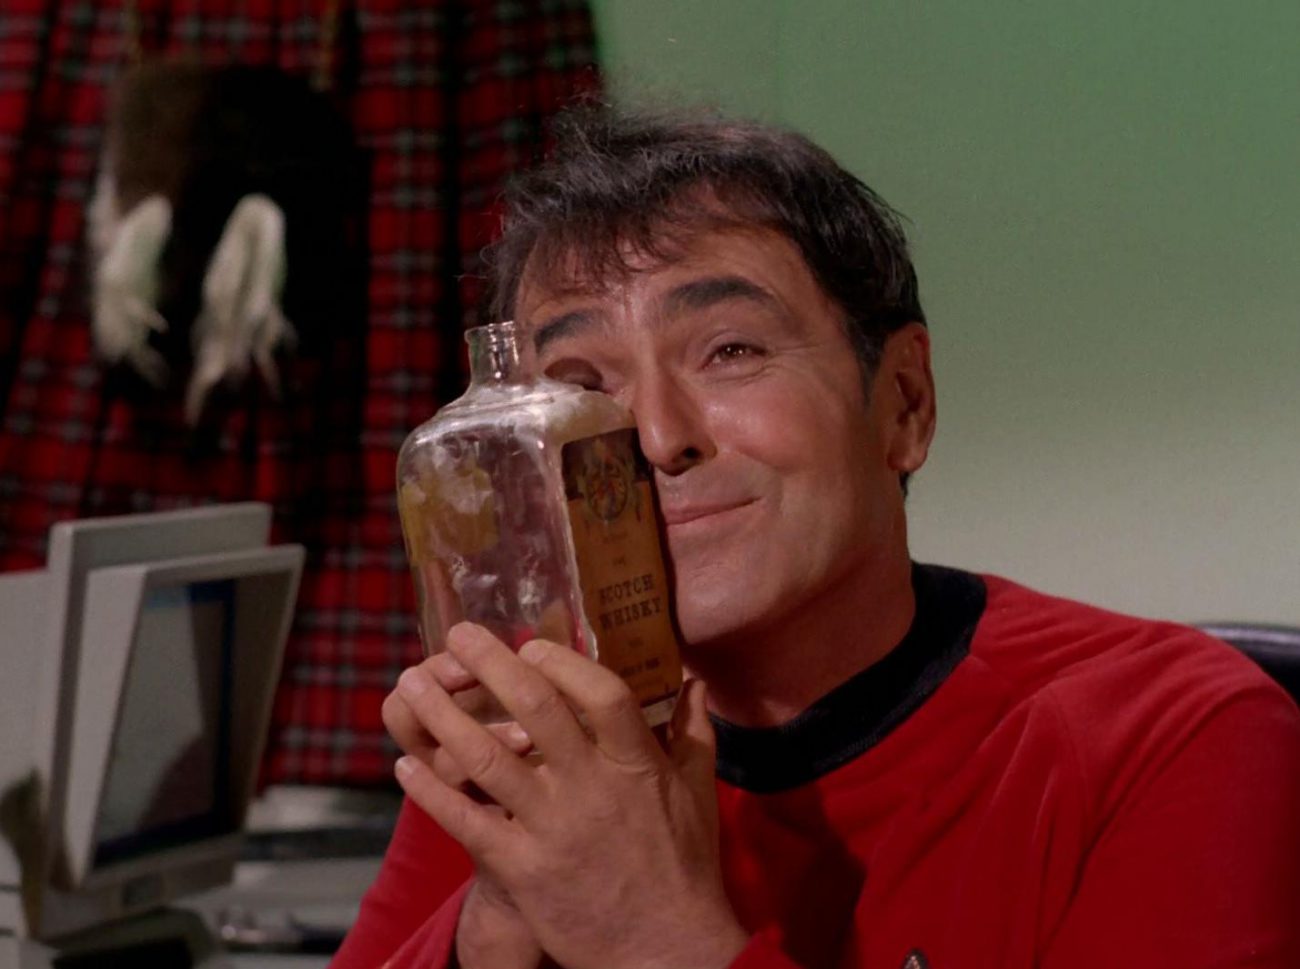 Uma startup Alcarelle irá produzir um substituto de álcool a partir do Star Trek